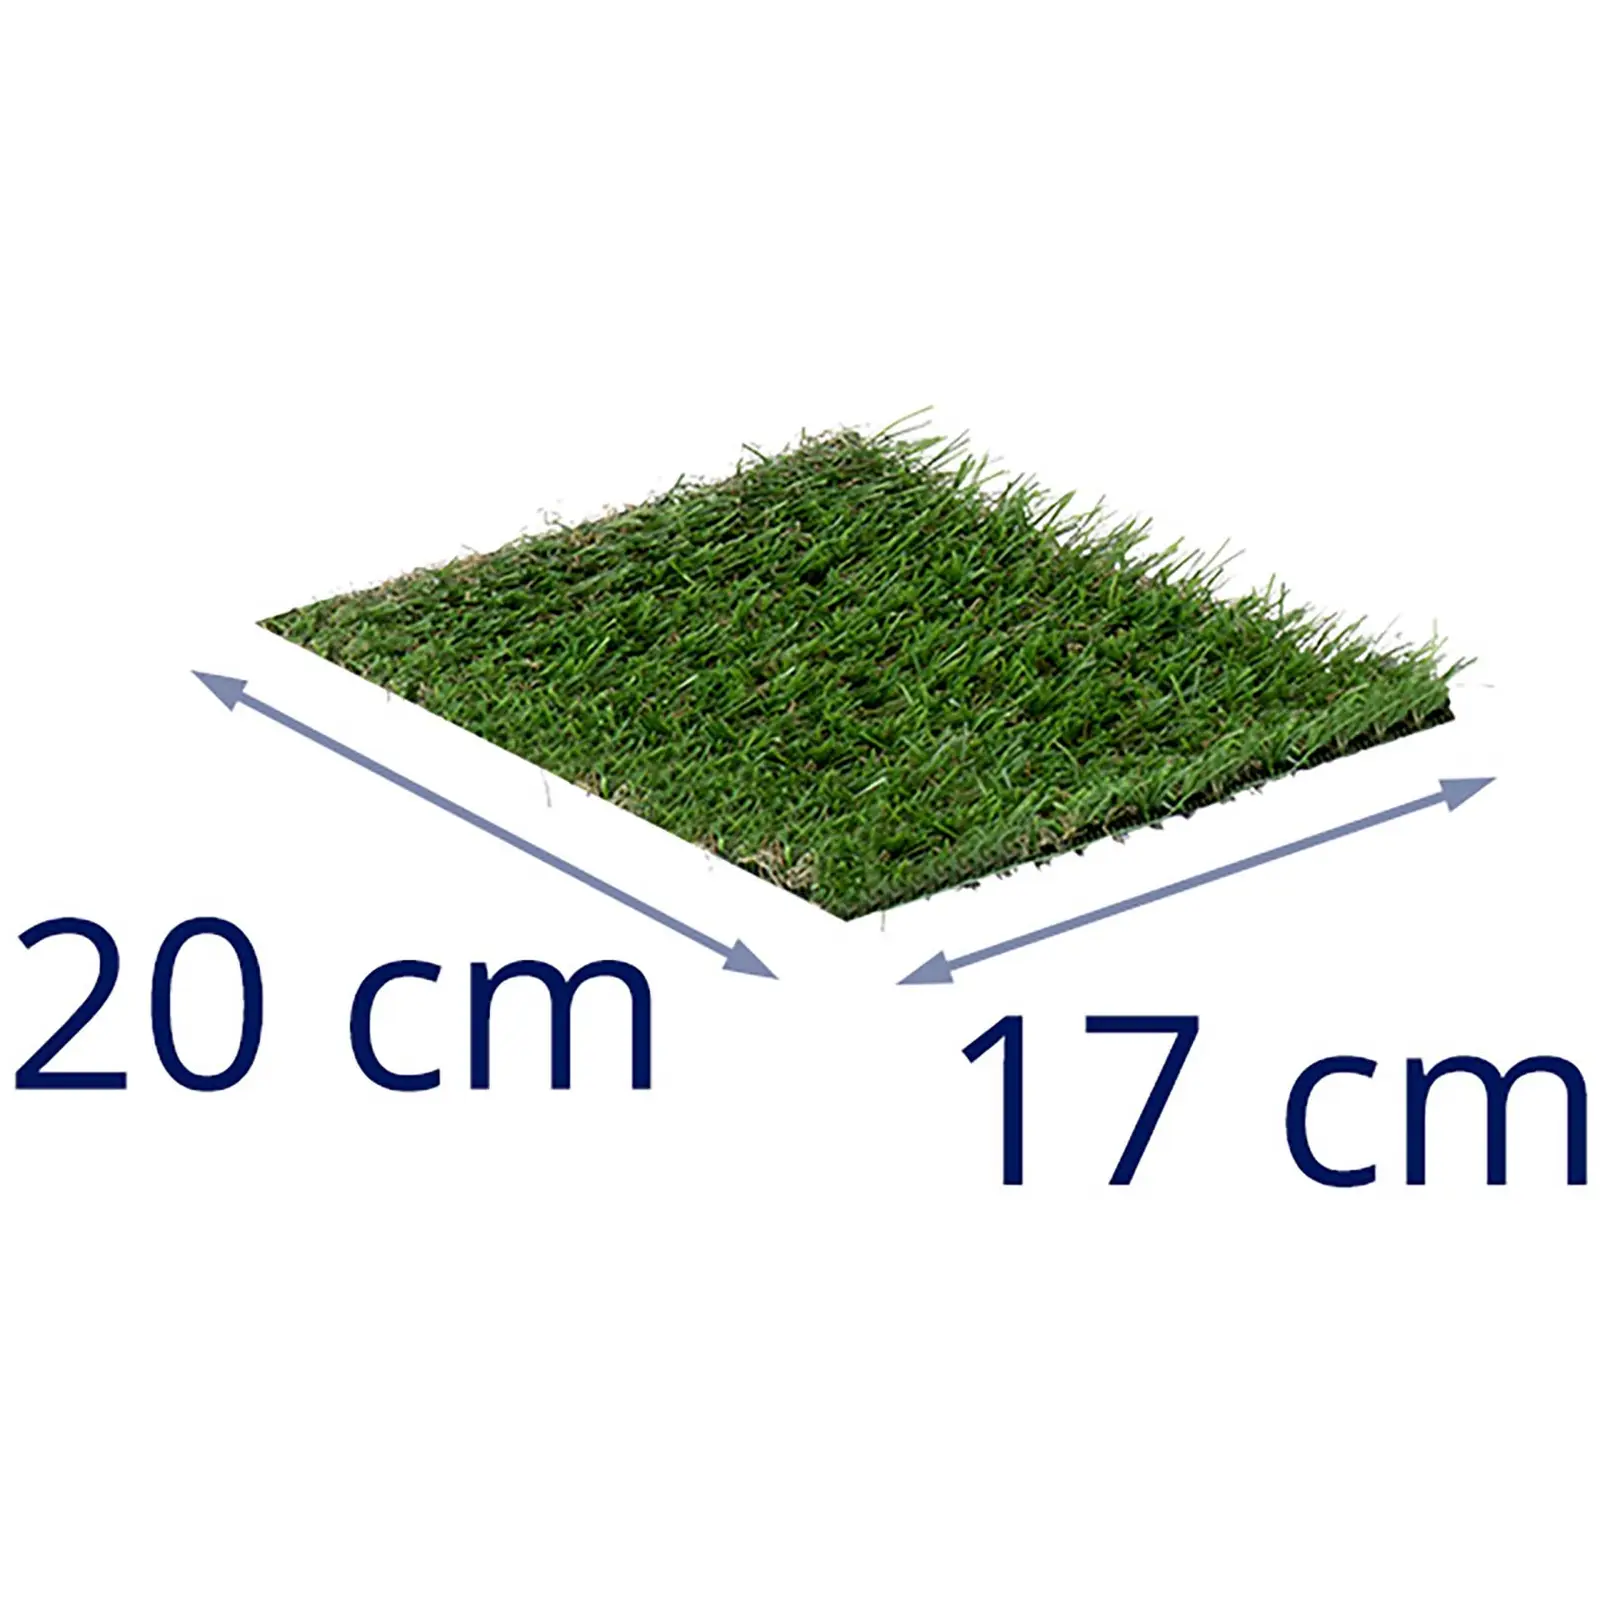 Konstgräs - 3 prover - 20 x 17 cm vardera - Höjd: 20-30 mm - Stygn: 20/10 13/10 14/10 cm - UV-beständigt